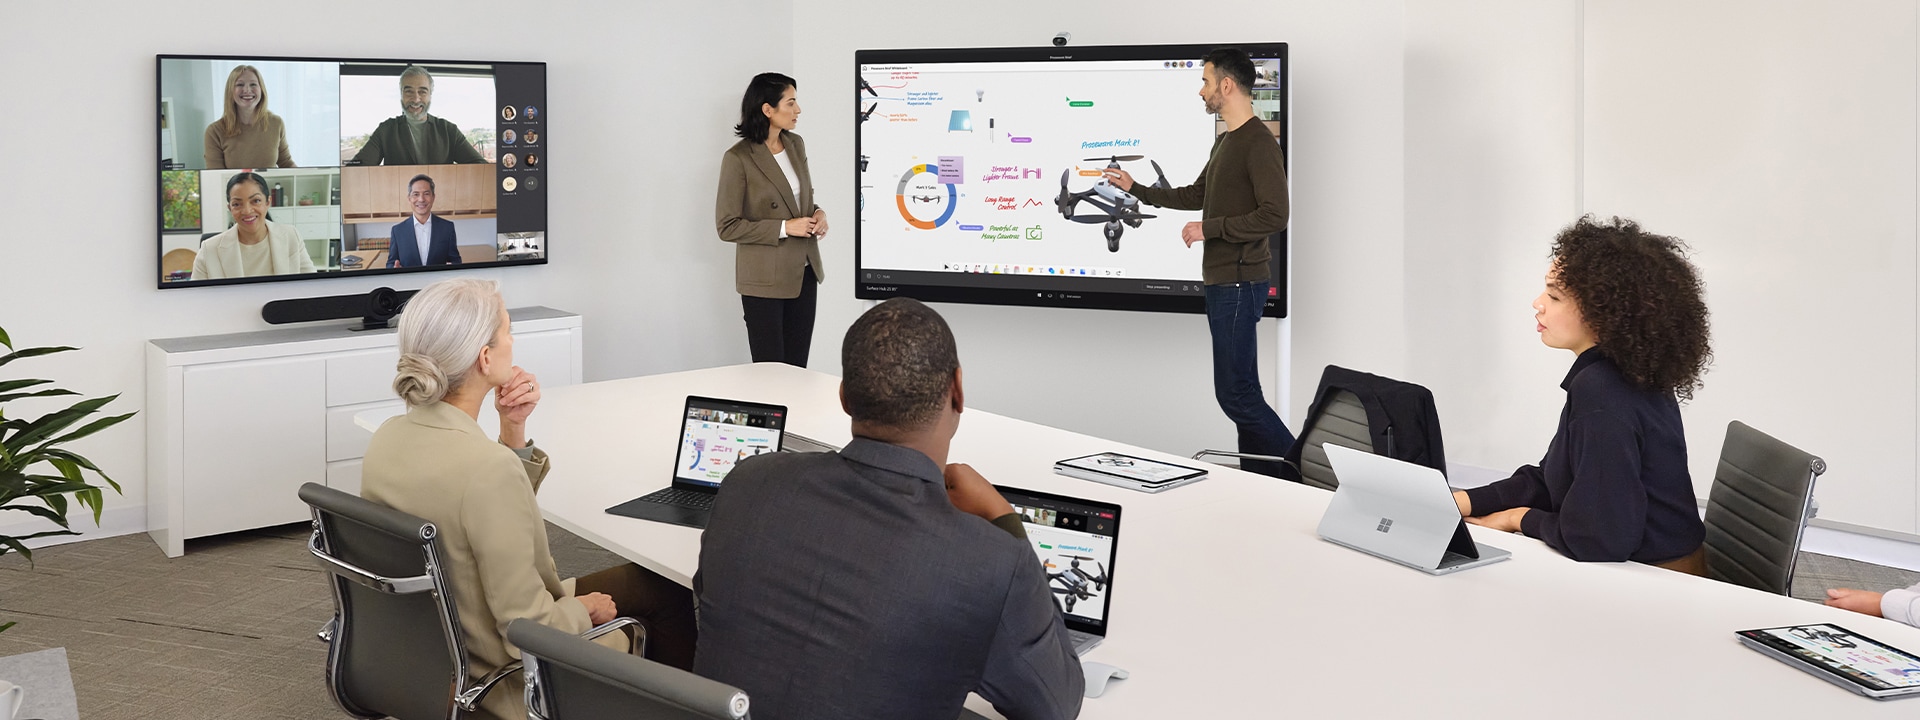 Surface Hub 2S を使用して共同作業する 2 人の作業員が、近くのデスクの上にある Surface Laptop でバーチャルの Teams ミーティングも進行している